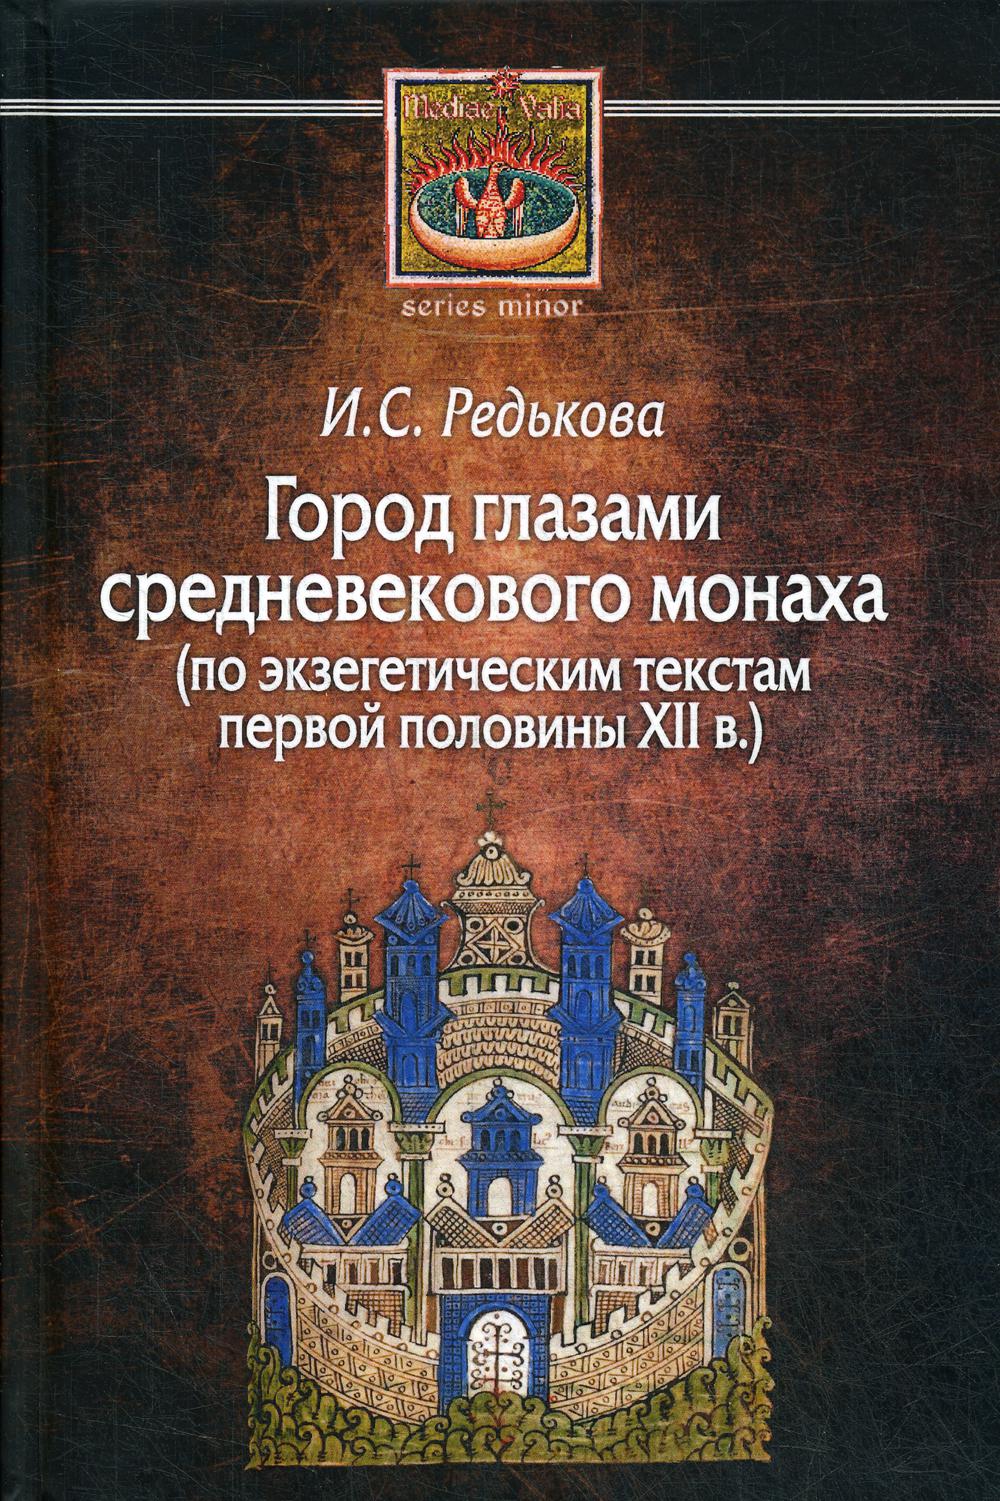 фото Книга город глазами средневекового монаха (по экзегетическим текстам первой половины xi... центр гуманитарных инициатив